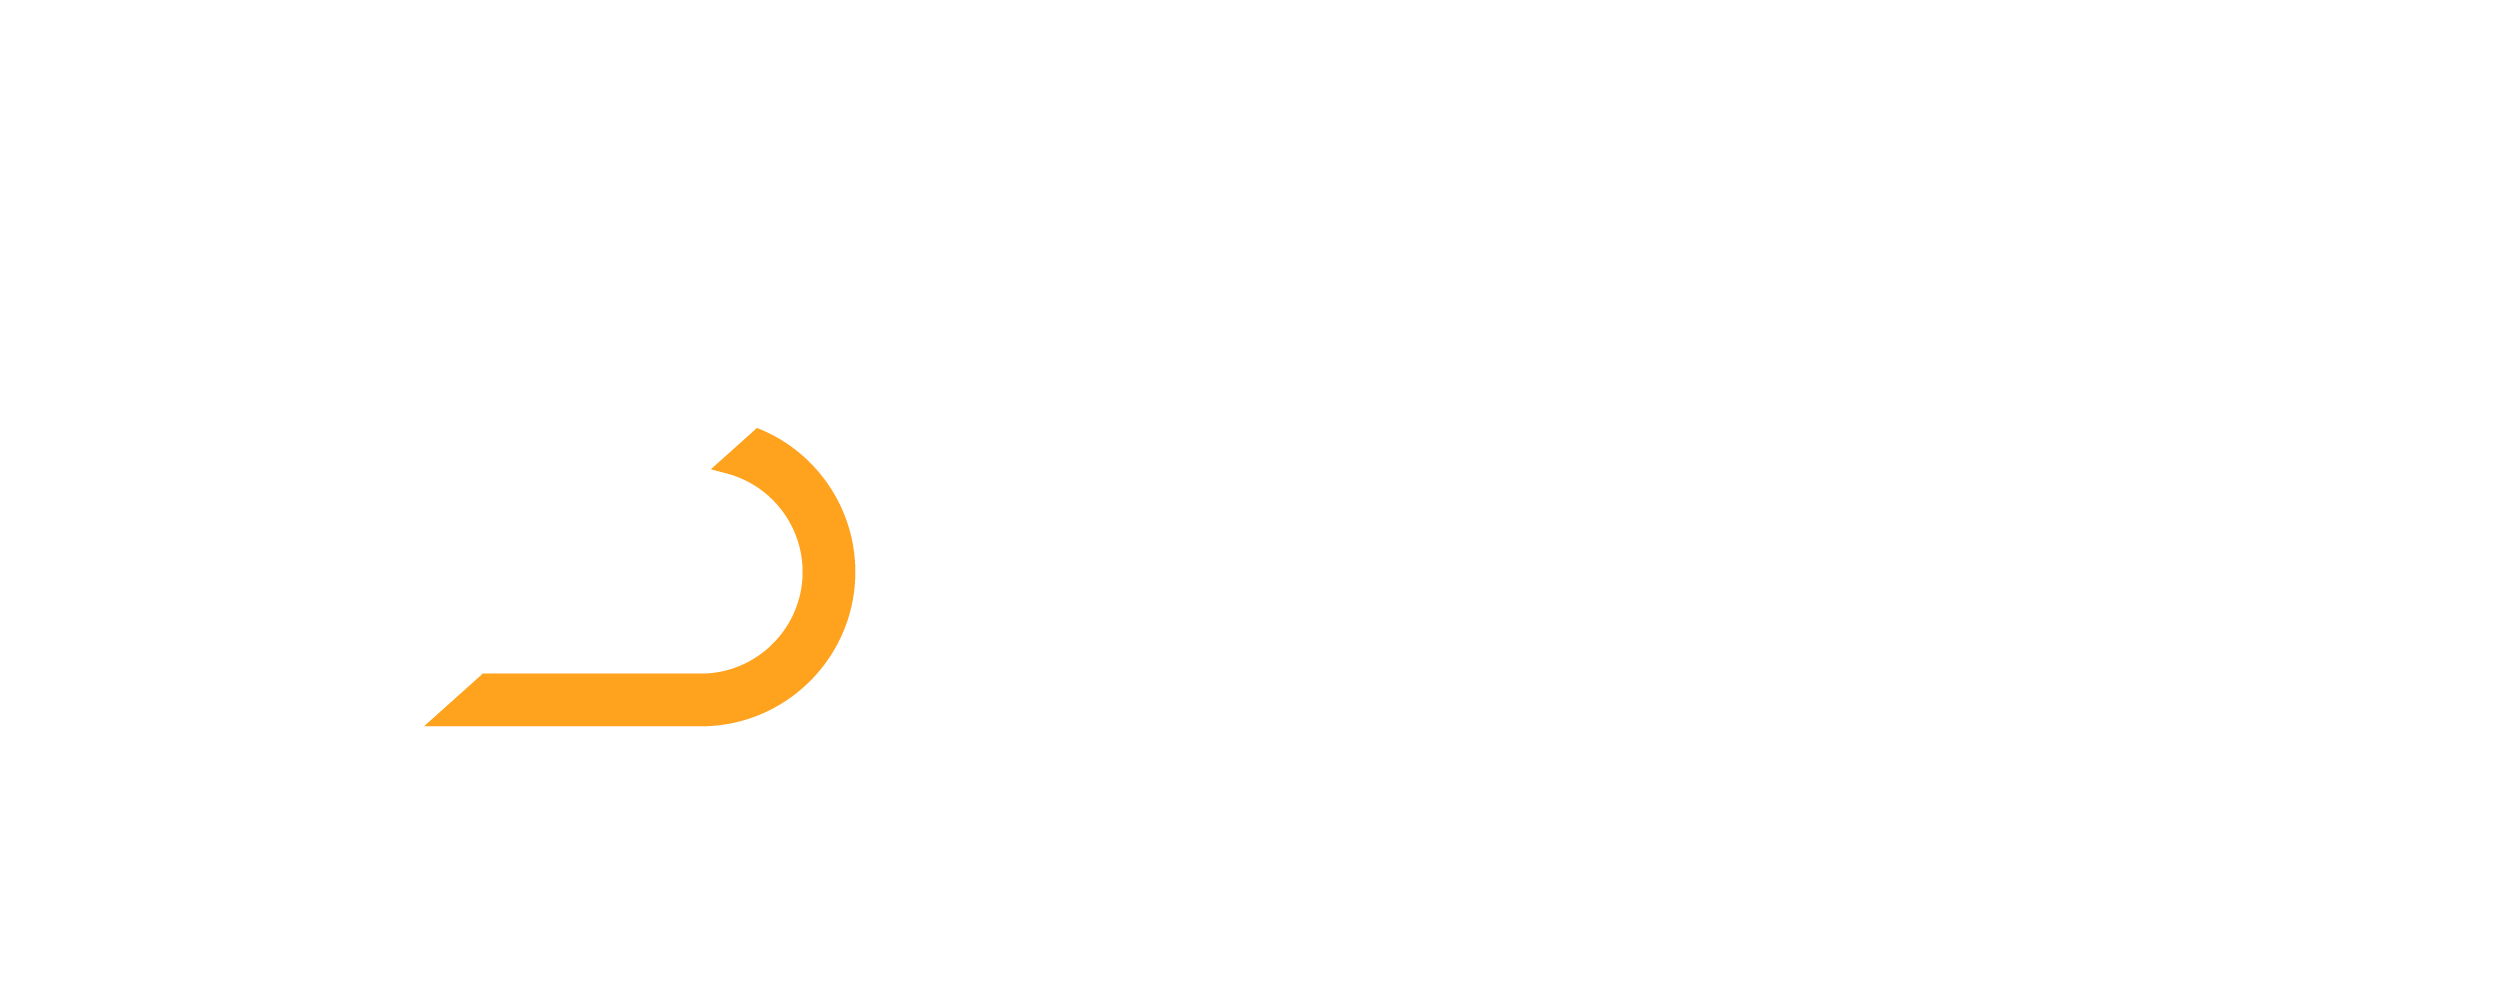 NineSmart